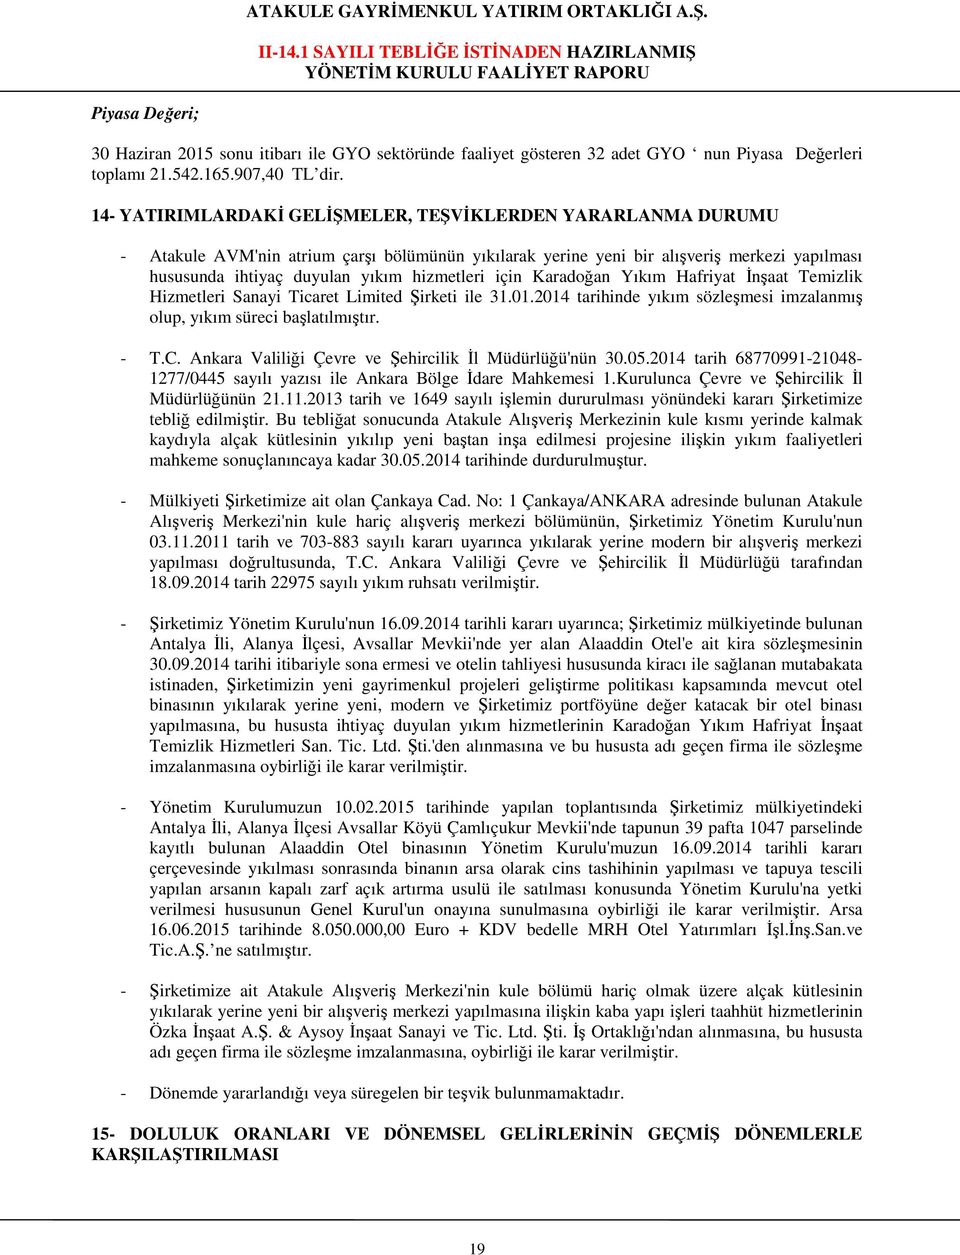 için Karadoğan Yıkım Hafriyat İnşaat Temizlik Hizmetleri Sanayi Ticaret Limited Şirketi ile 31.01.2014 tarihinde yıkım sözleşmesi imzalanmış olup, yıkım süreci başlatılmıştır. - T.C.